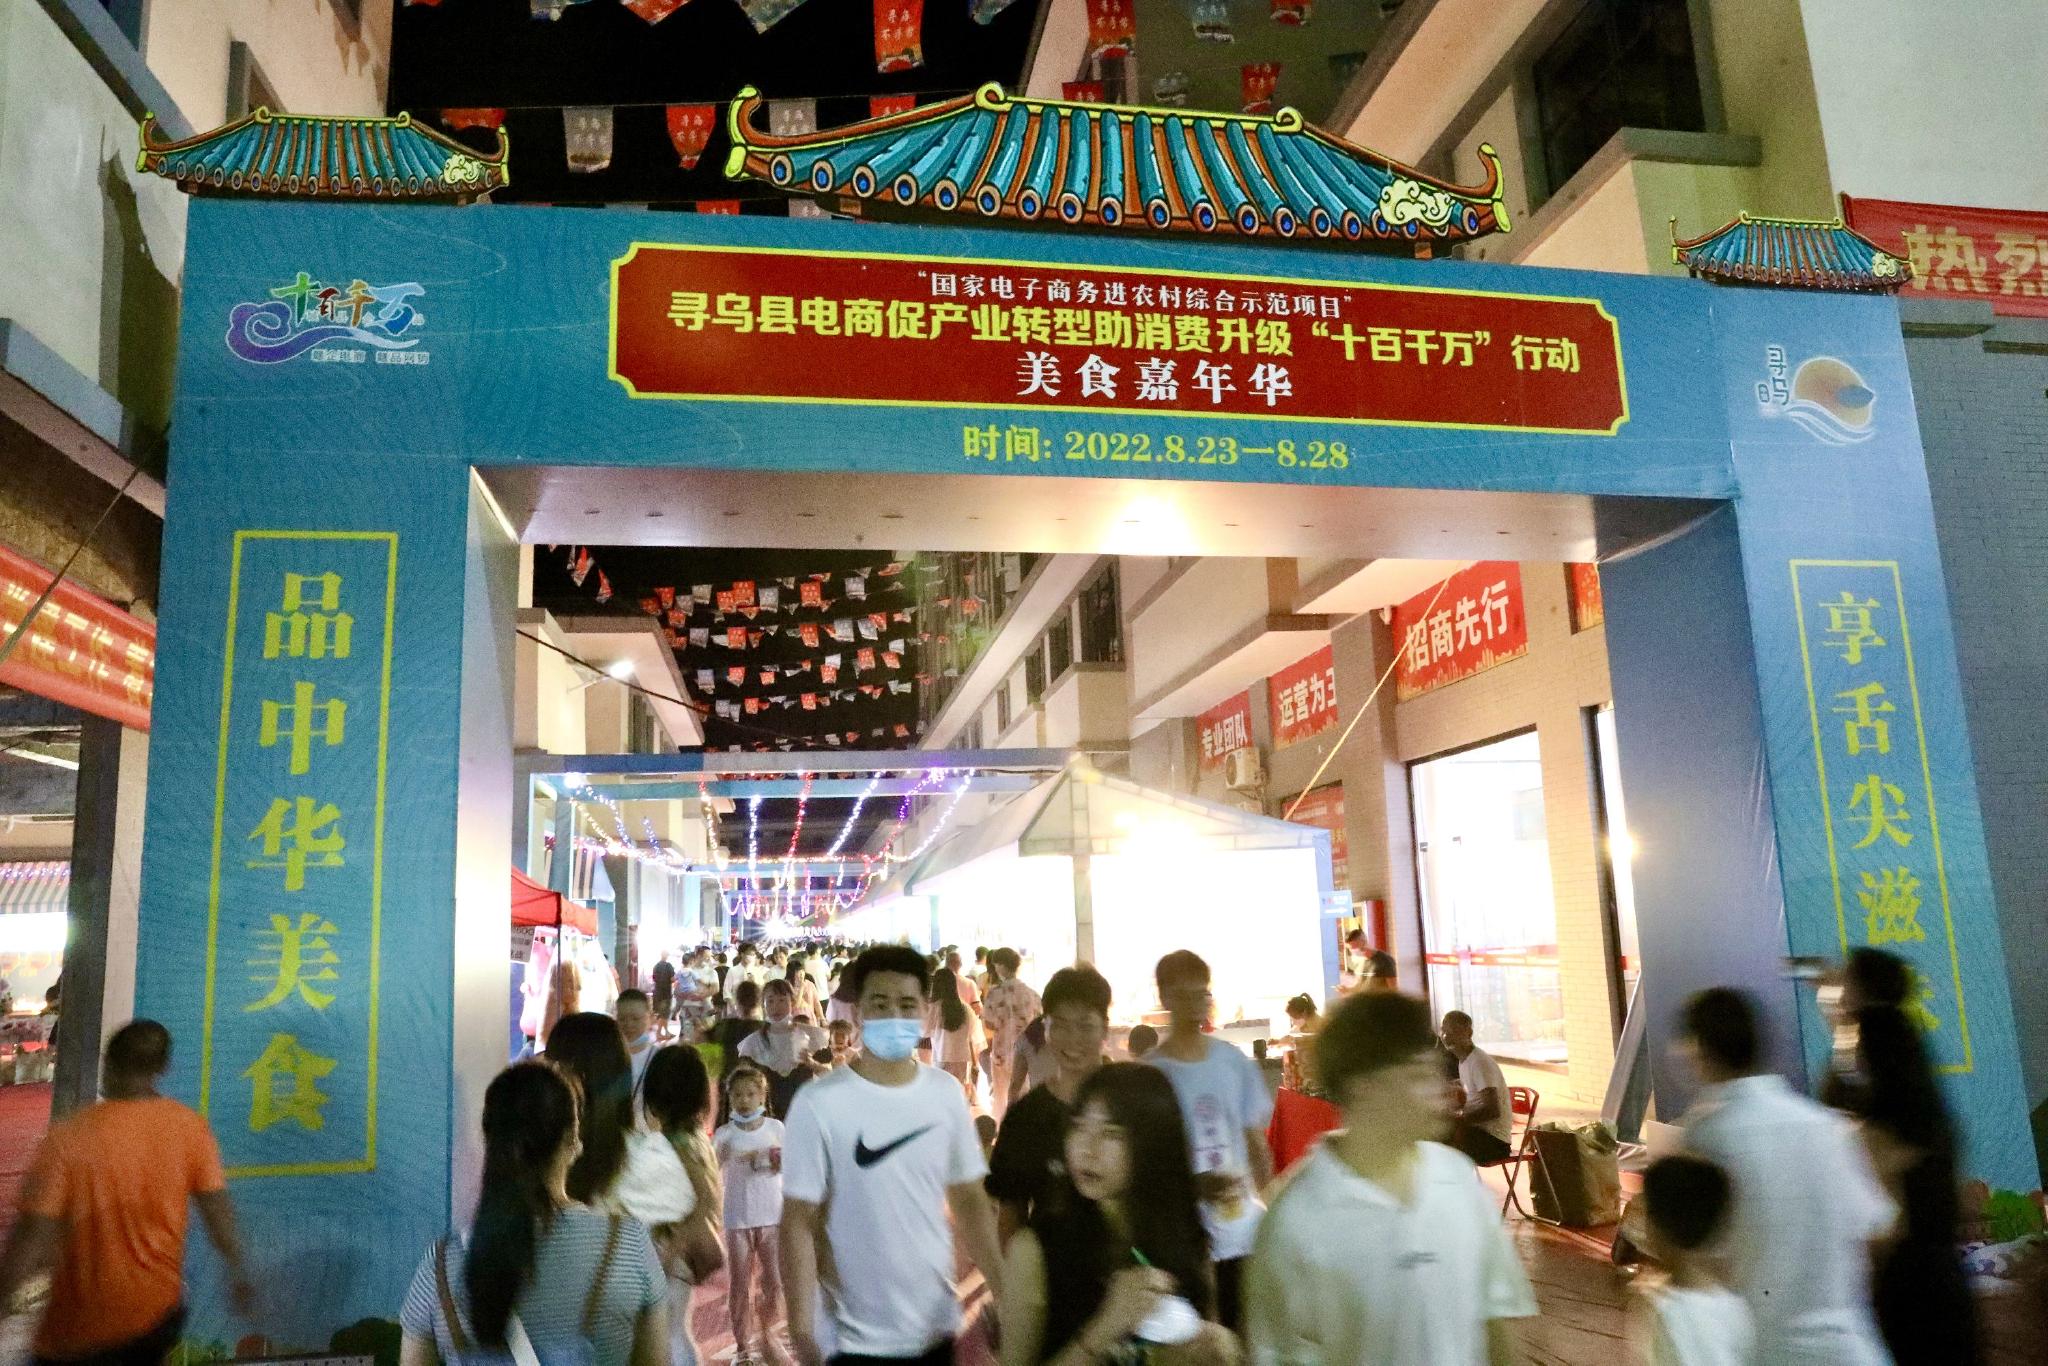 8月27日晚，游客在江西省寻乌县国际商贸城美食嘉年华上游览。中国日报记者 朱兴鑫 摄